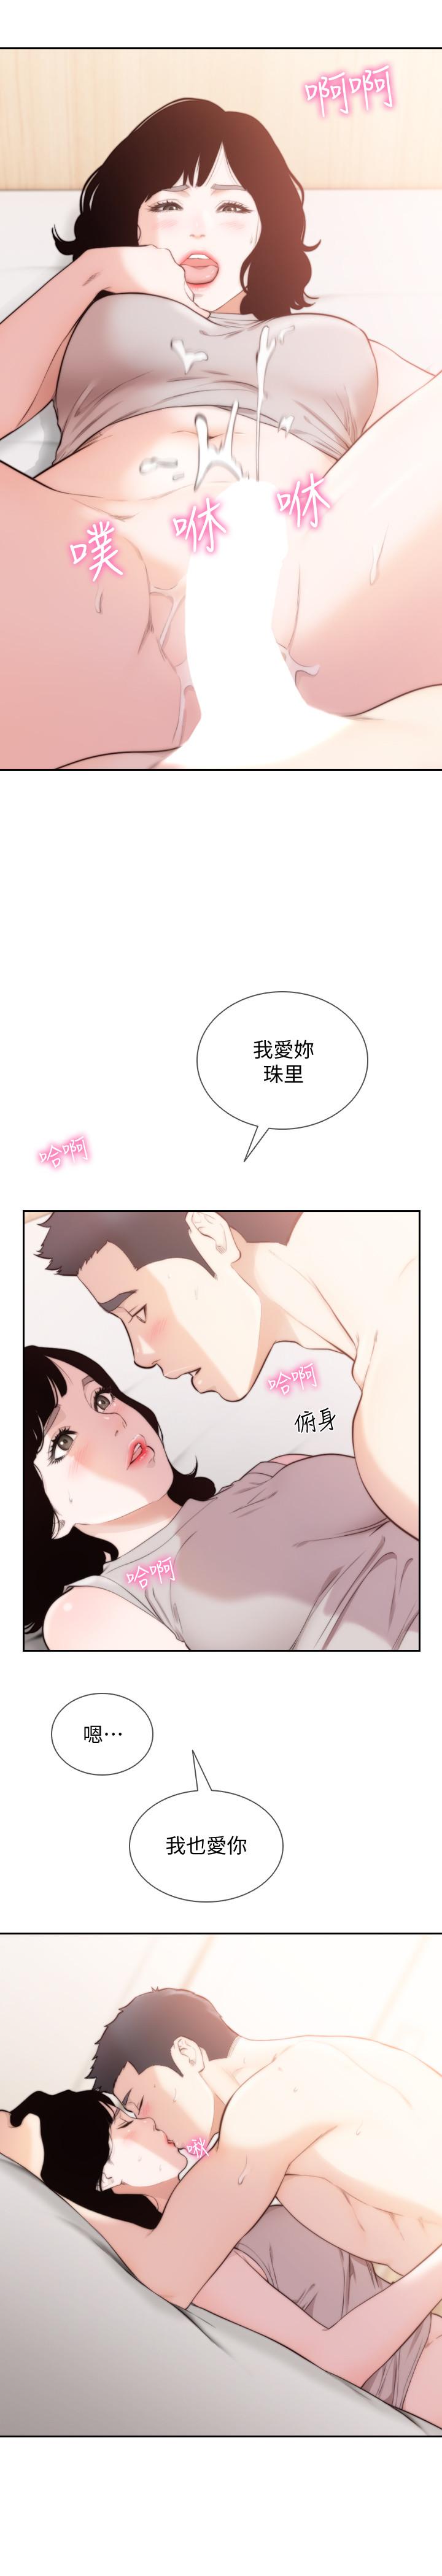 韩国污漫画 前女友 最终话-淳男造就的未来 21